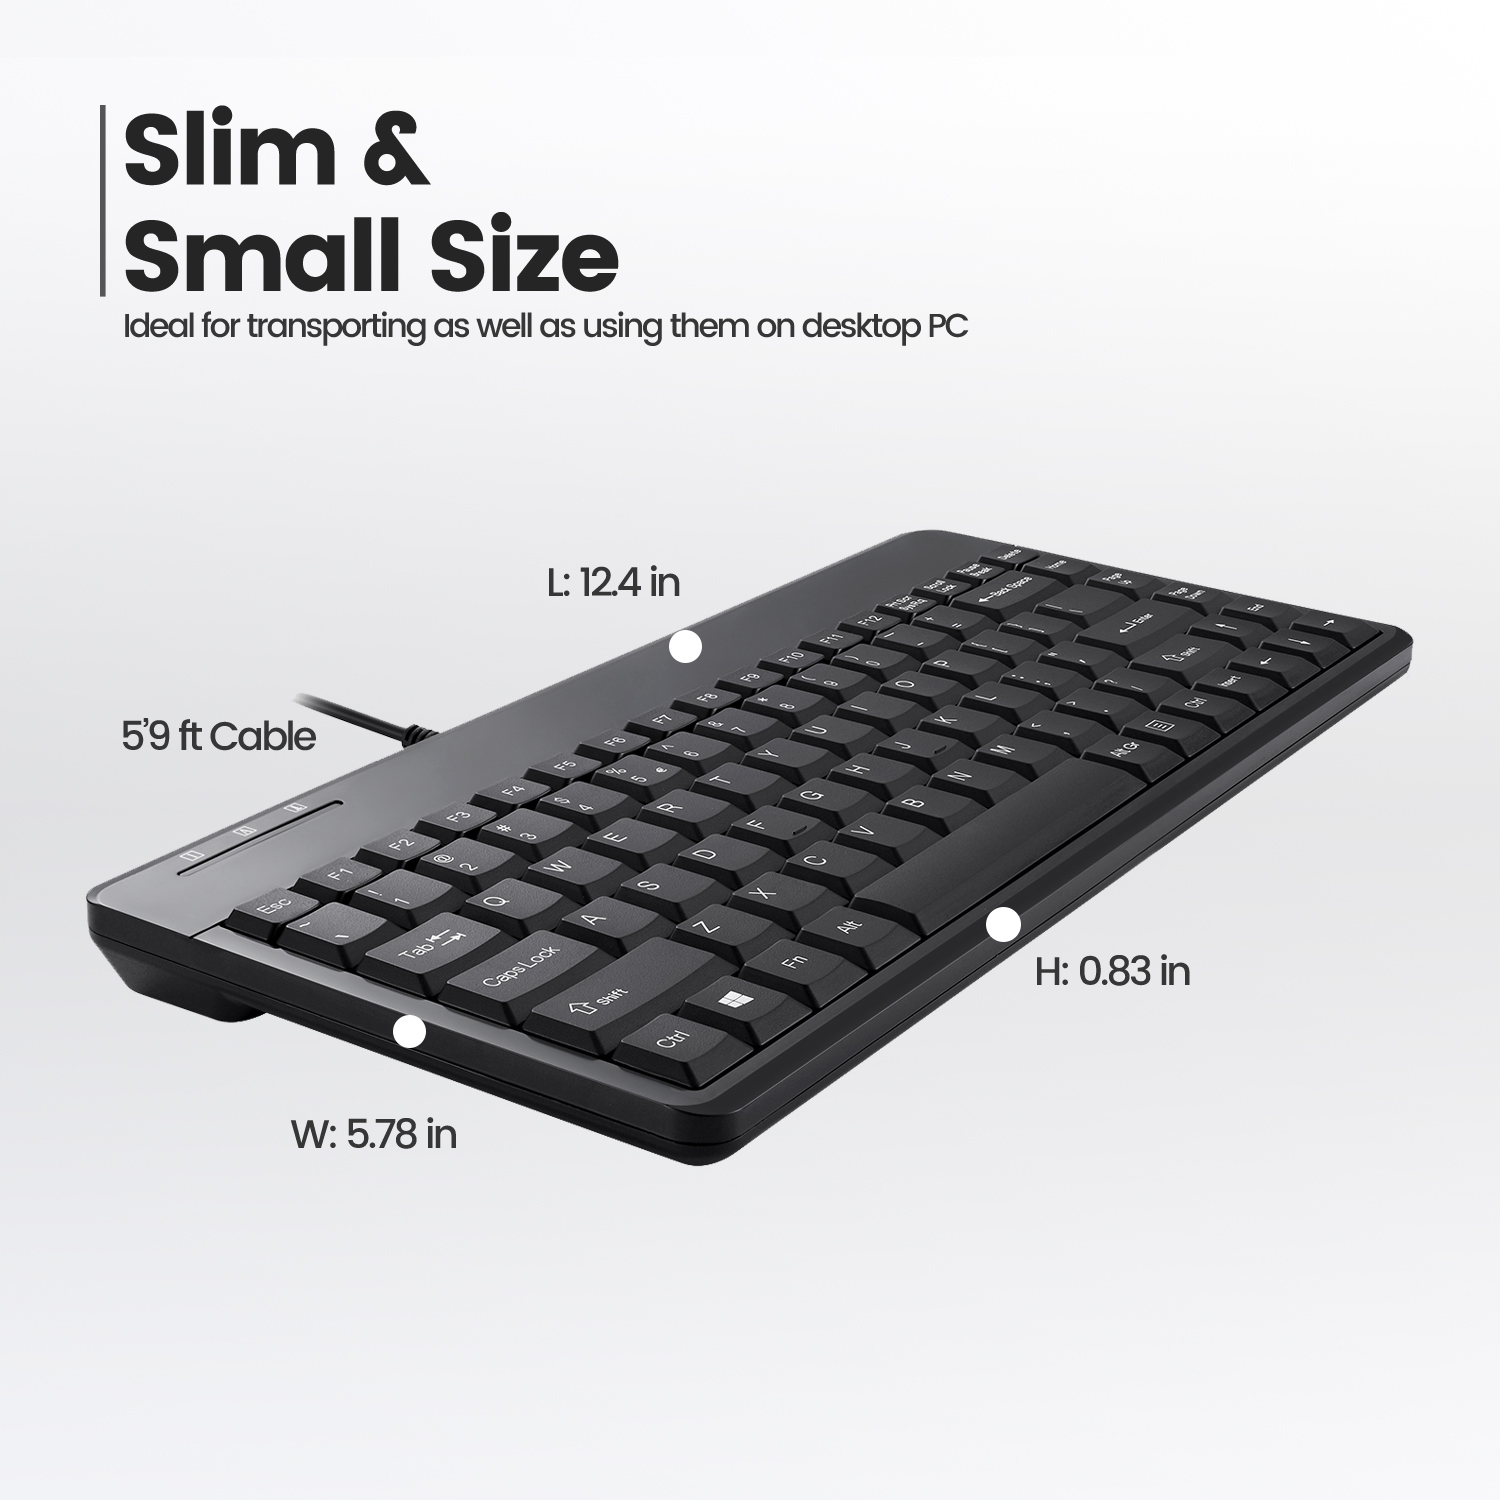 Mini PERIXX U, Tastatur PERIBOARD-409